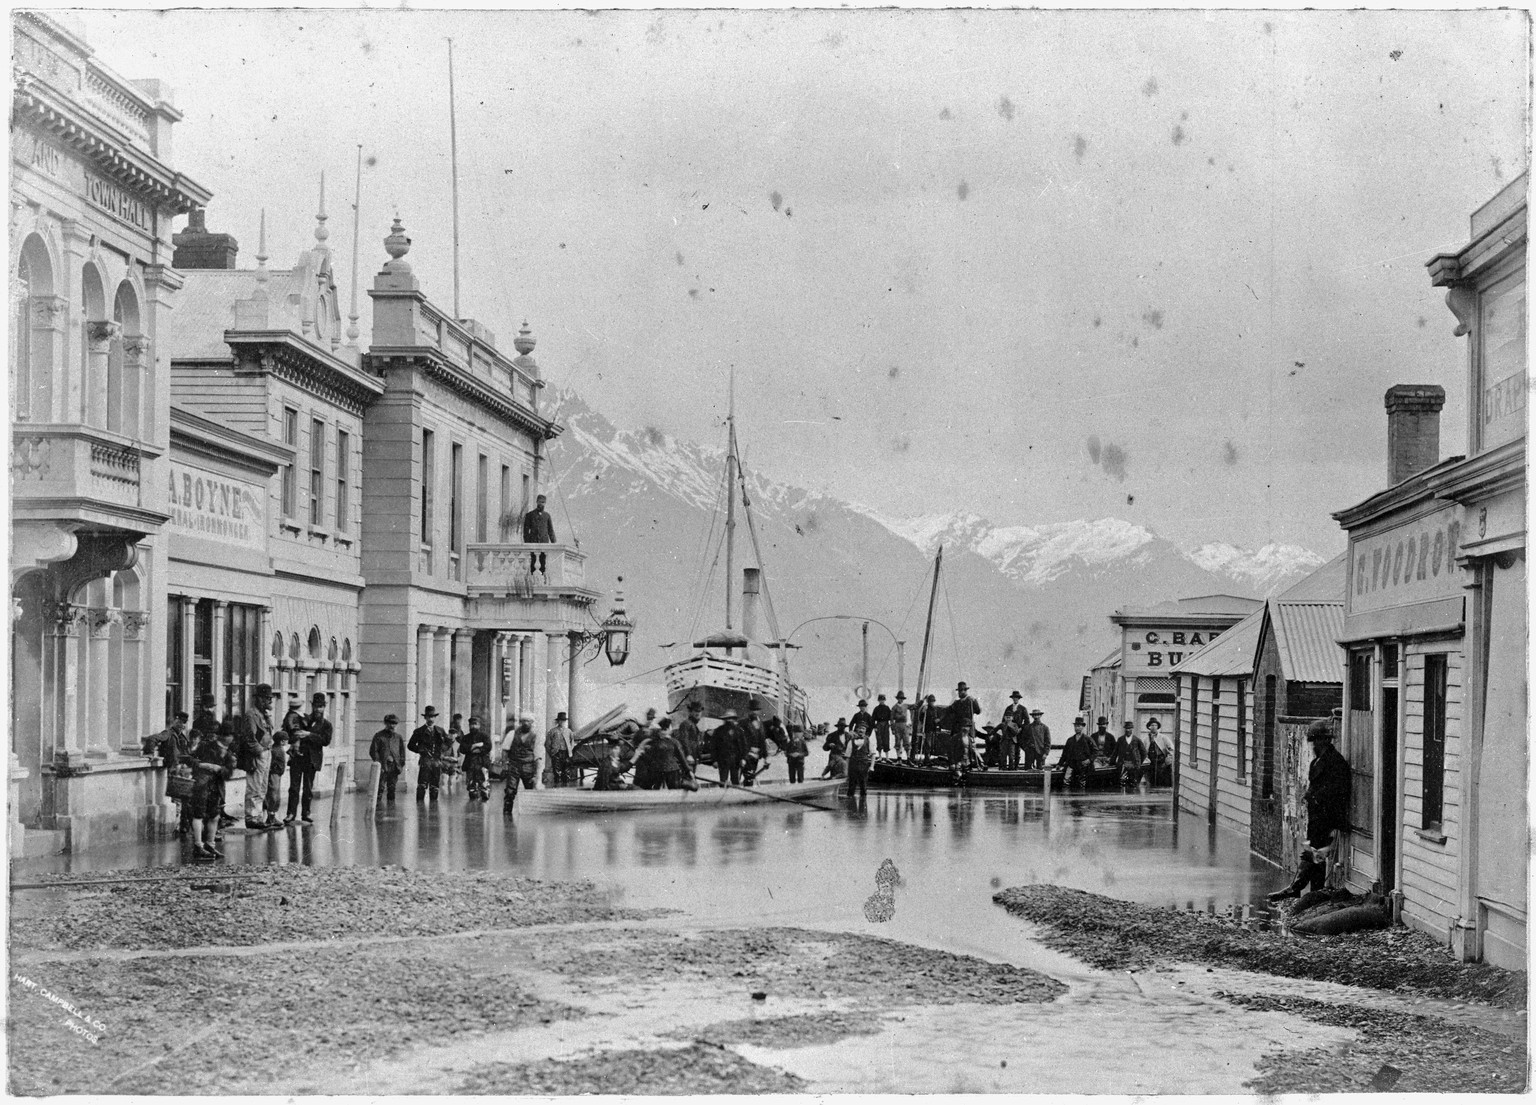 Hochwasser dämpft die Ballarat Street in Queenstown, Neuseeland - 1878.